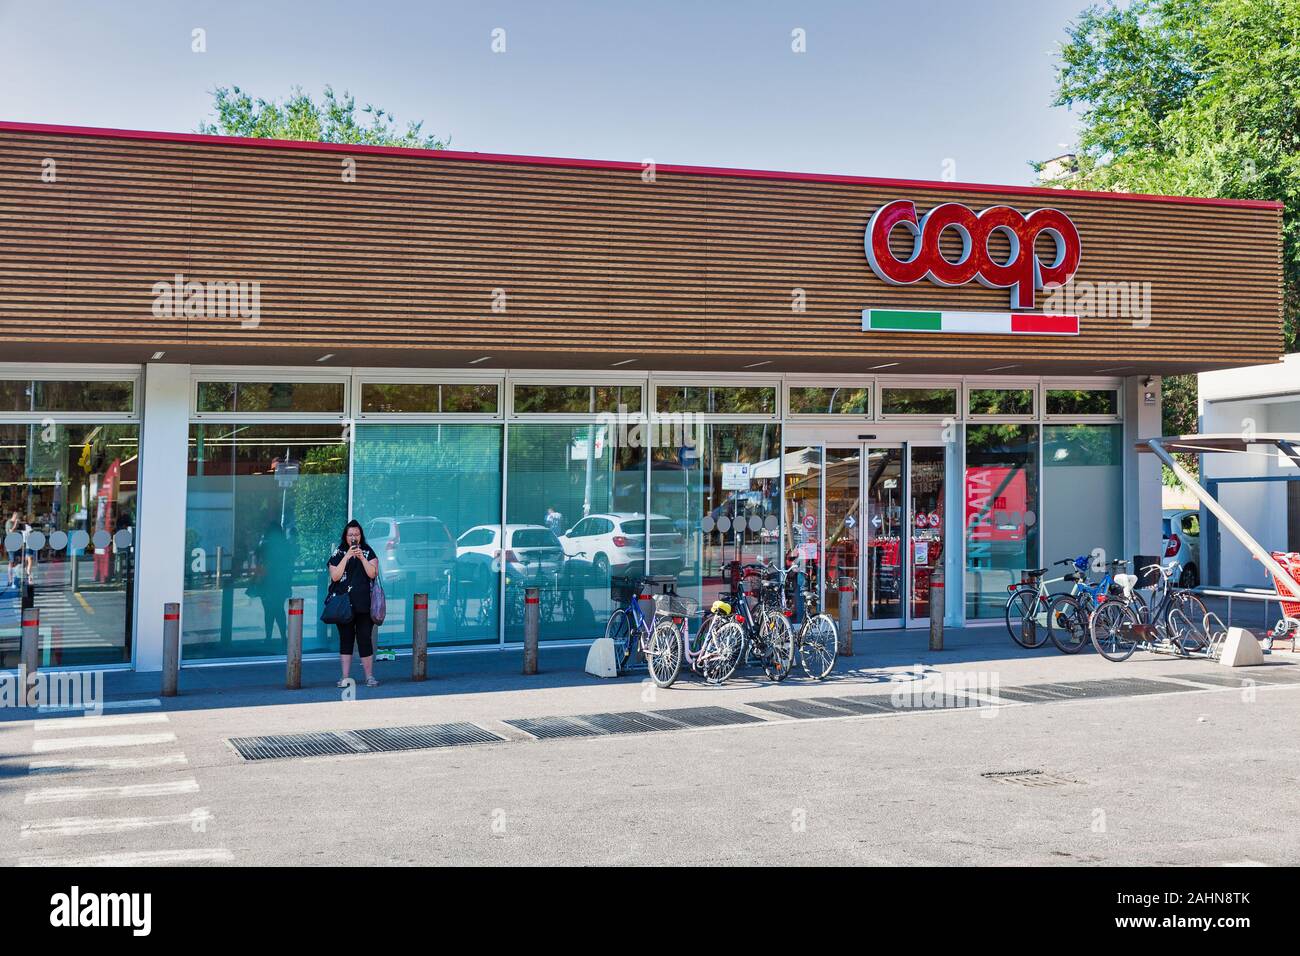 BOLOGNA, Italia - 10 luglio 2019: la gente visita Coop store. Coop è un sistema di i consumatori italiani di cooperative che gestisce la più grande supermercato ch Foto Stock